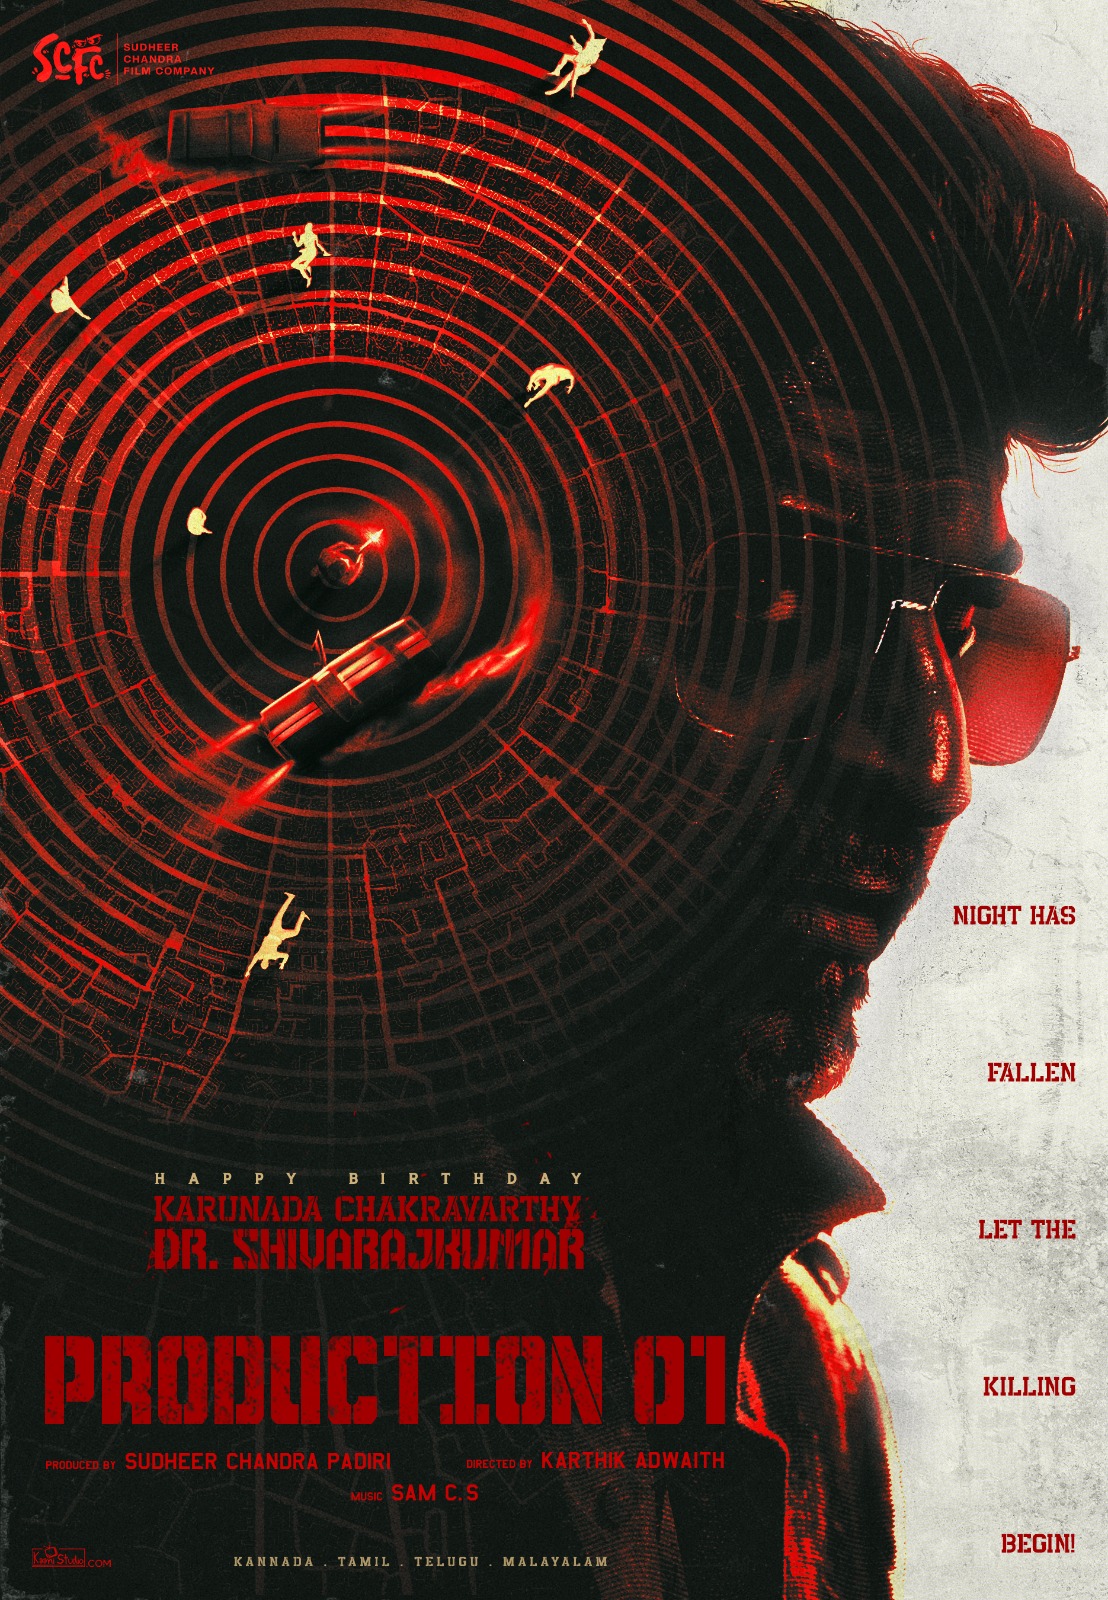 டாக்டர் சிவராஜ் குமார், கார்த்திக் அத்வைத், சுதீர் சந்திர பாதிரியின் புதிய திரைப்படம் 'சிவண்ணா எஸ்சிஎஃப்சி01' (#ShivannaSCFC01) பான் இந்தியா படமாக உருவாகிறது